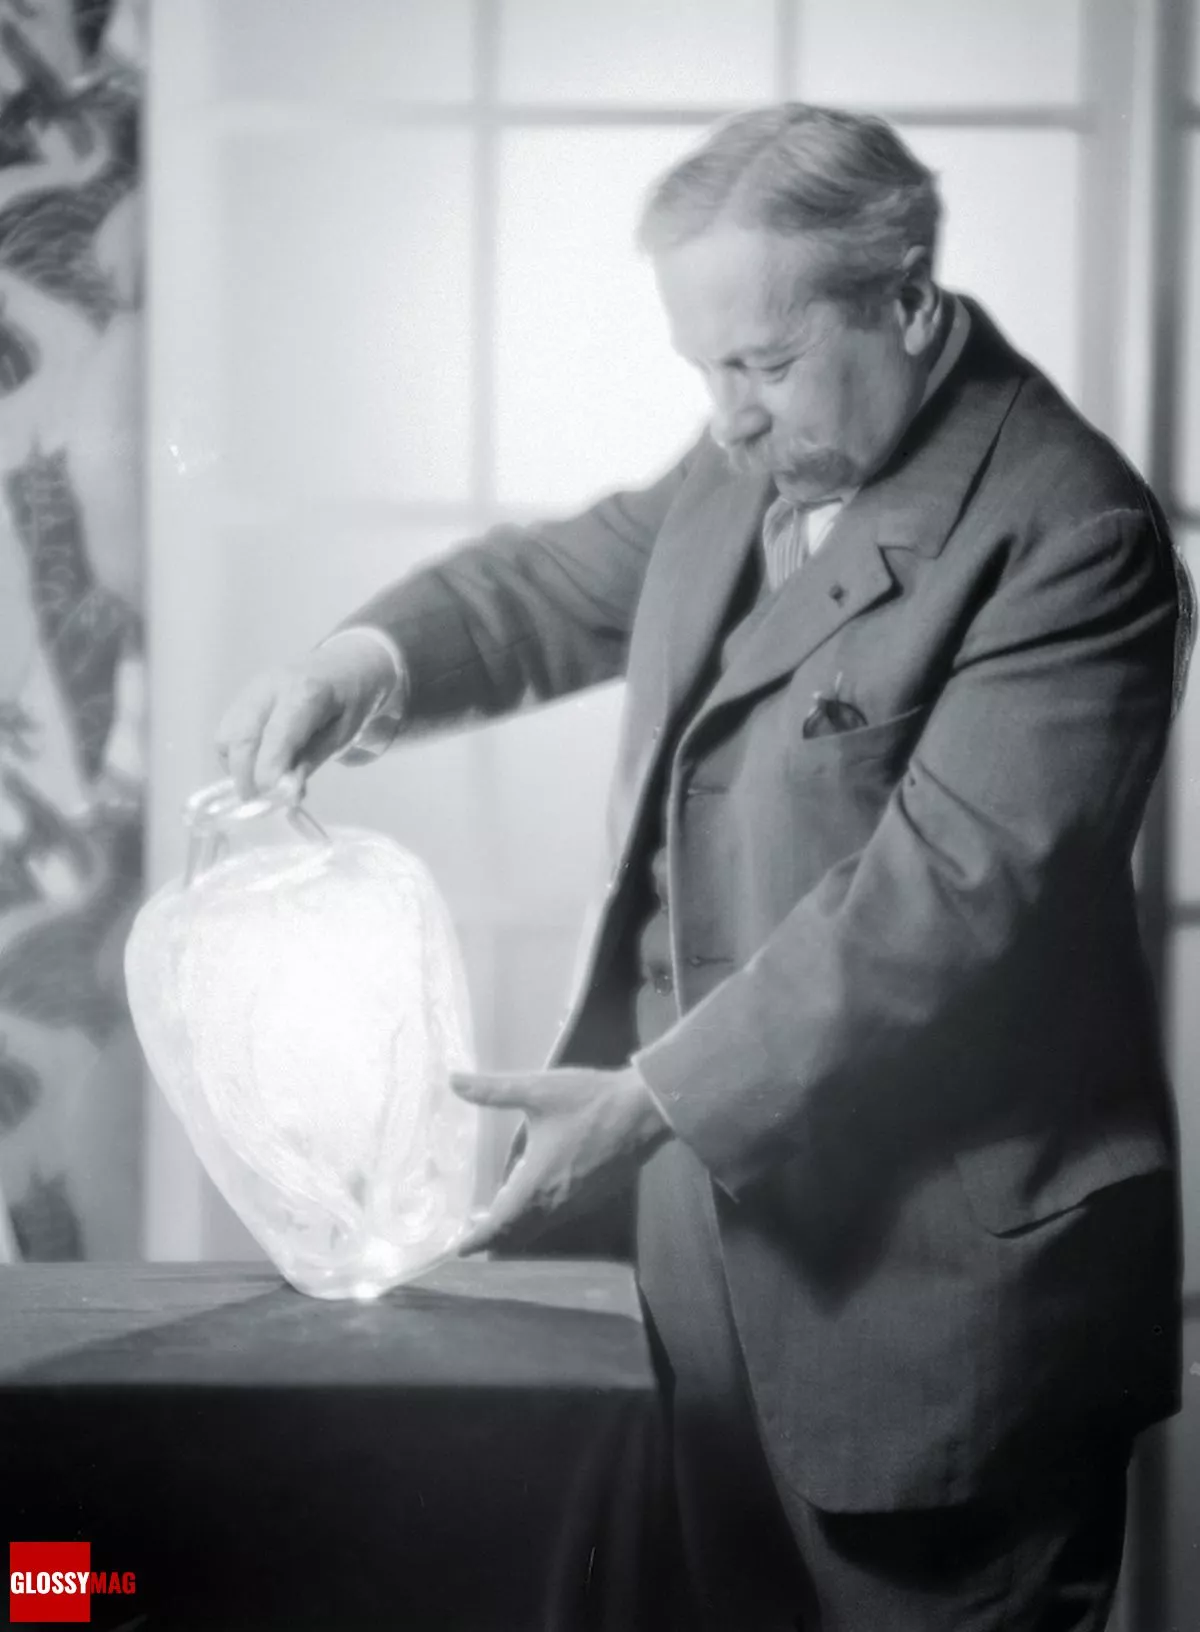 Рене Лалик (René Lalique) рассматривает вазу «Ящерица и Голуби» (Lizards and Bluets), созданную в 1913 году, 1926 г.